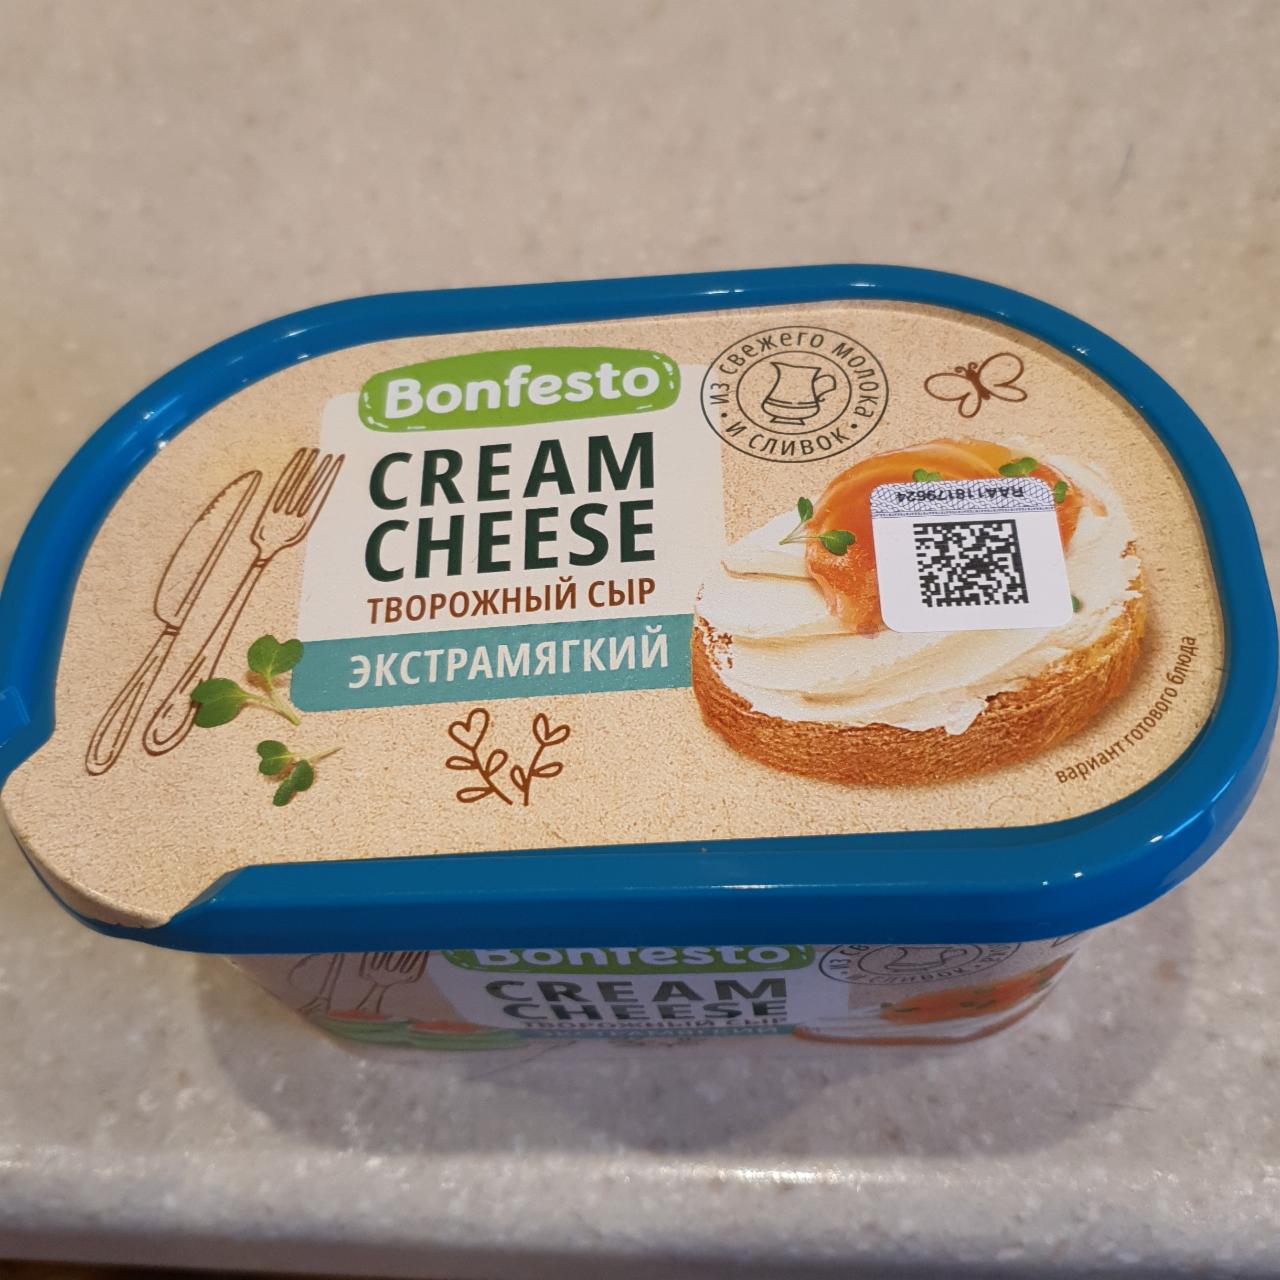 Фото - Творожный сыр экстрамягкий cream cheese Bonfesto